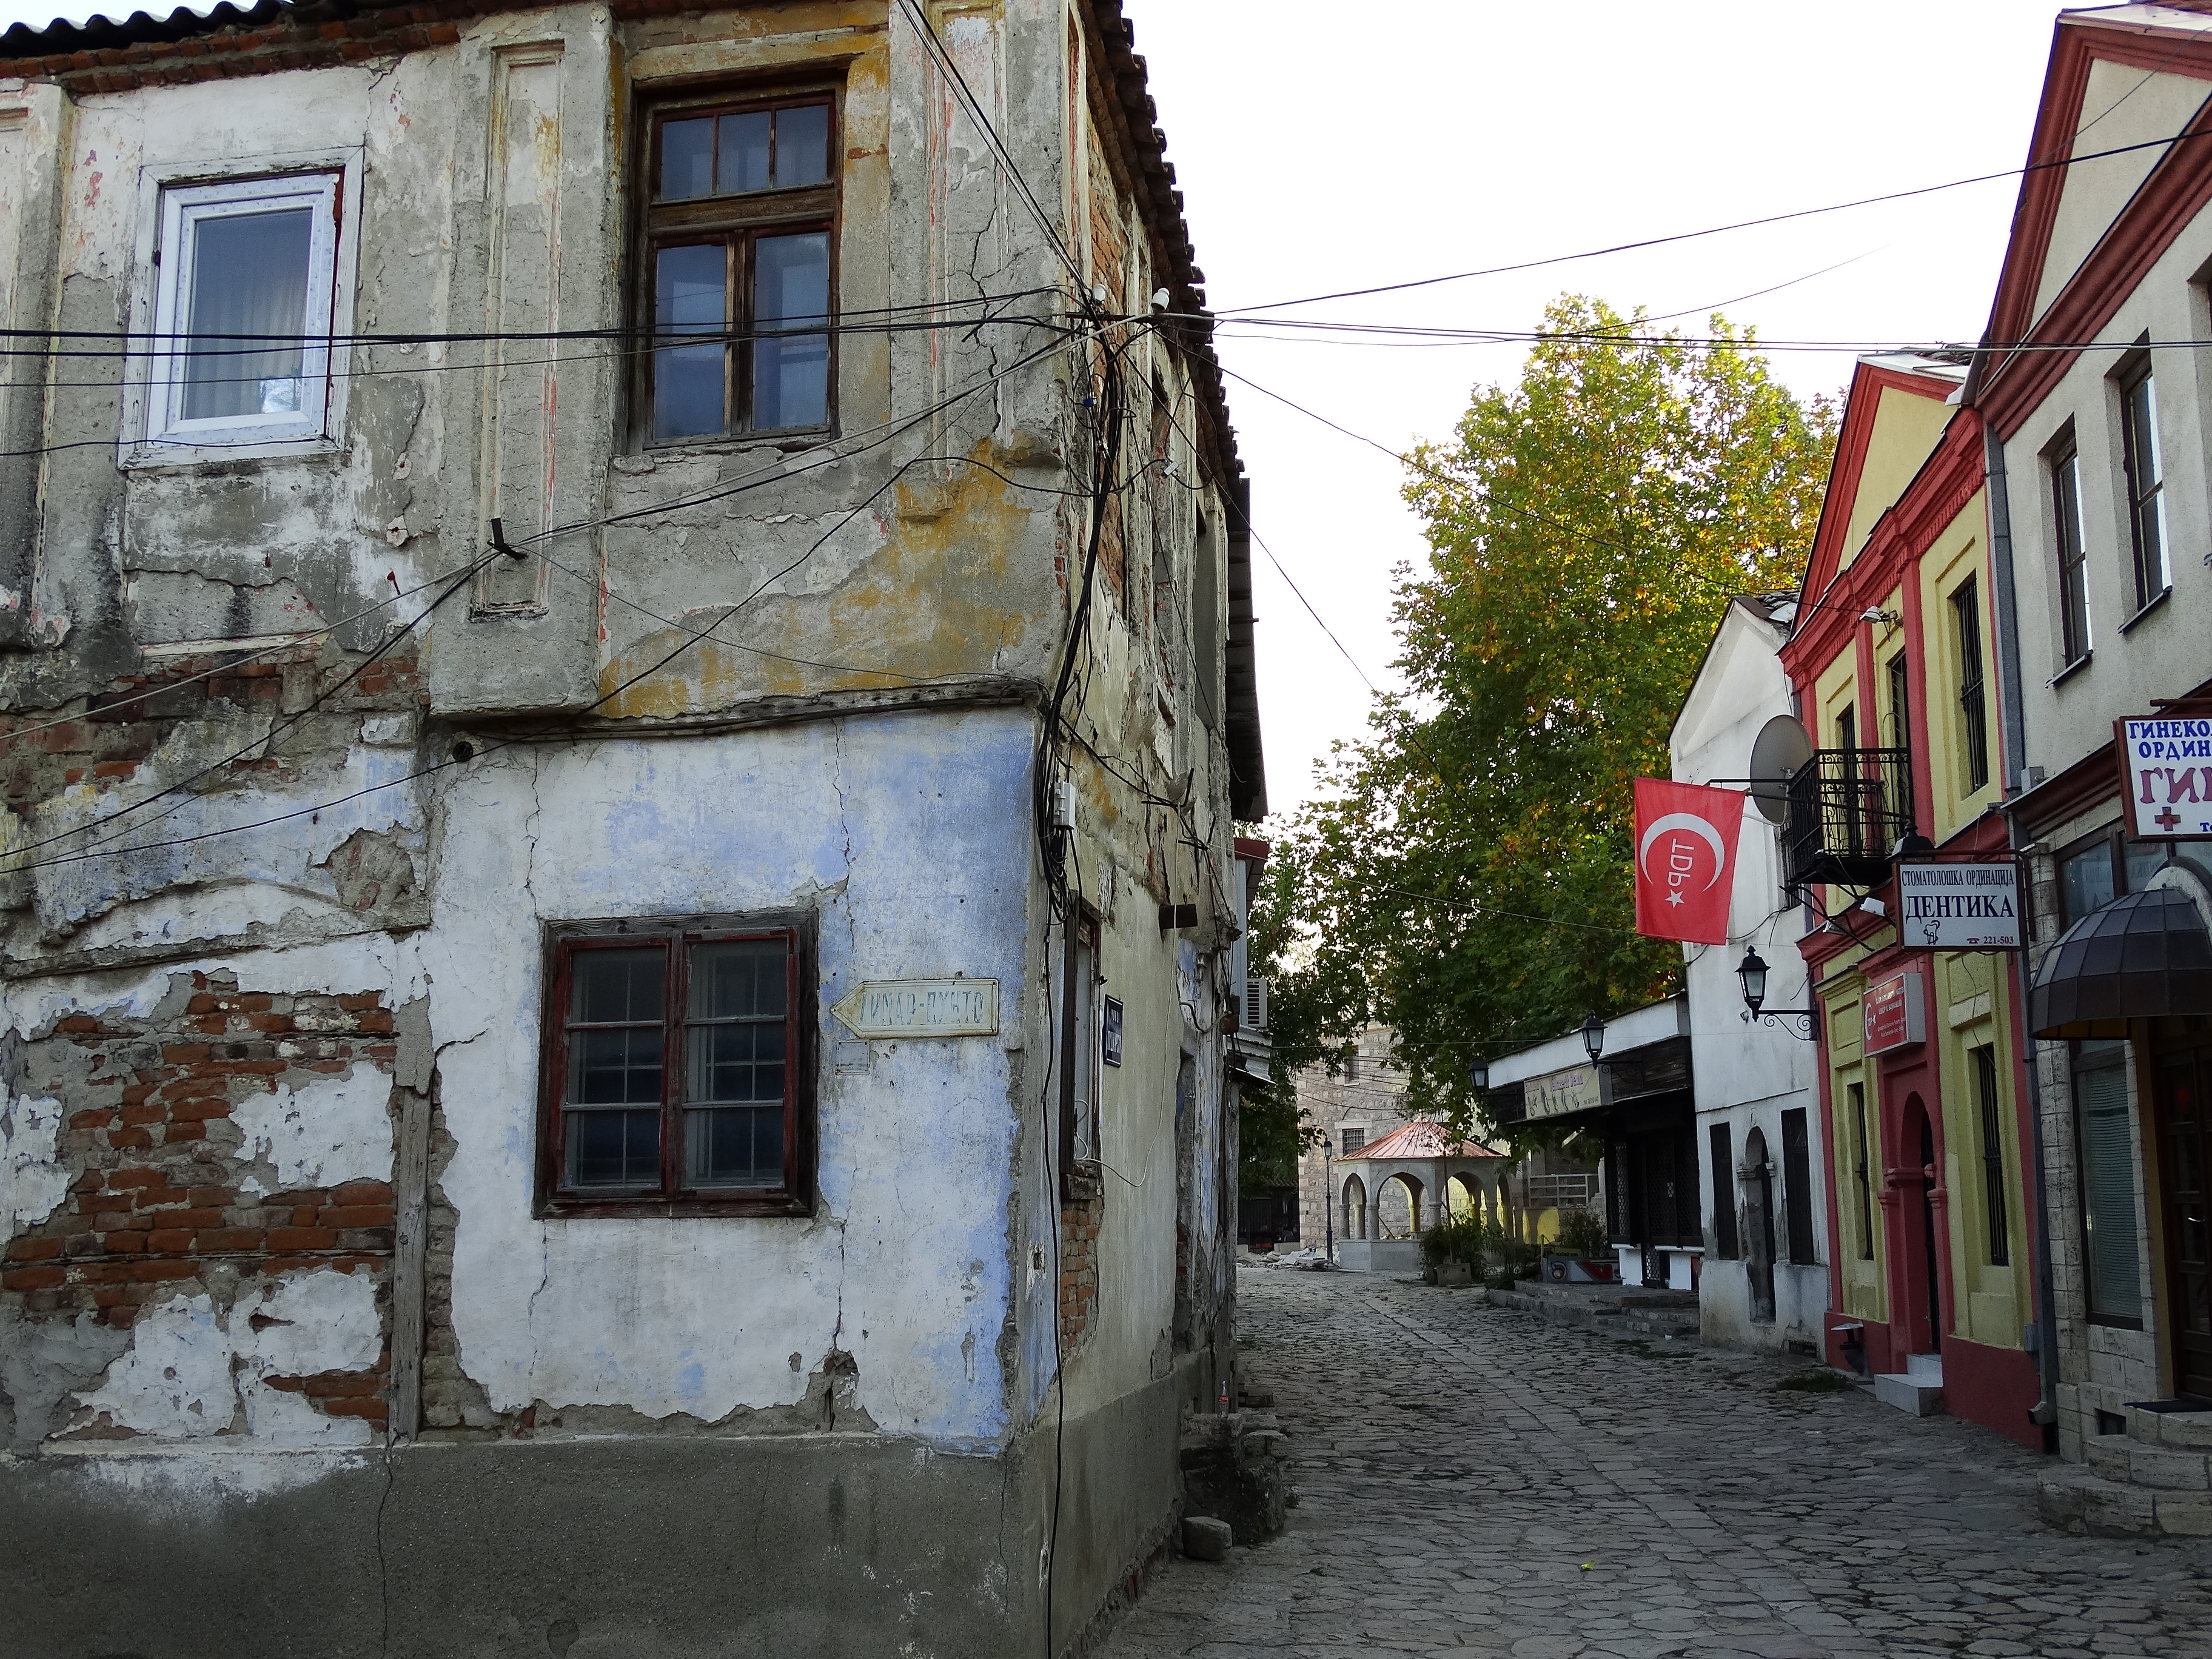 File:Old Town (Carsija) Scene - Skopje - Macedonia - 05.jpg ...